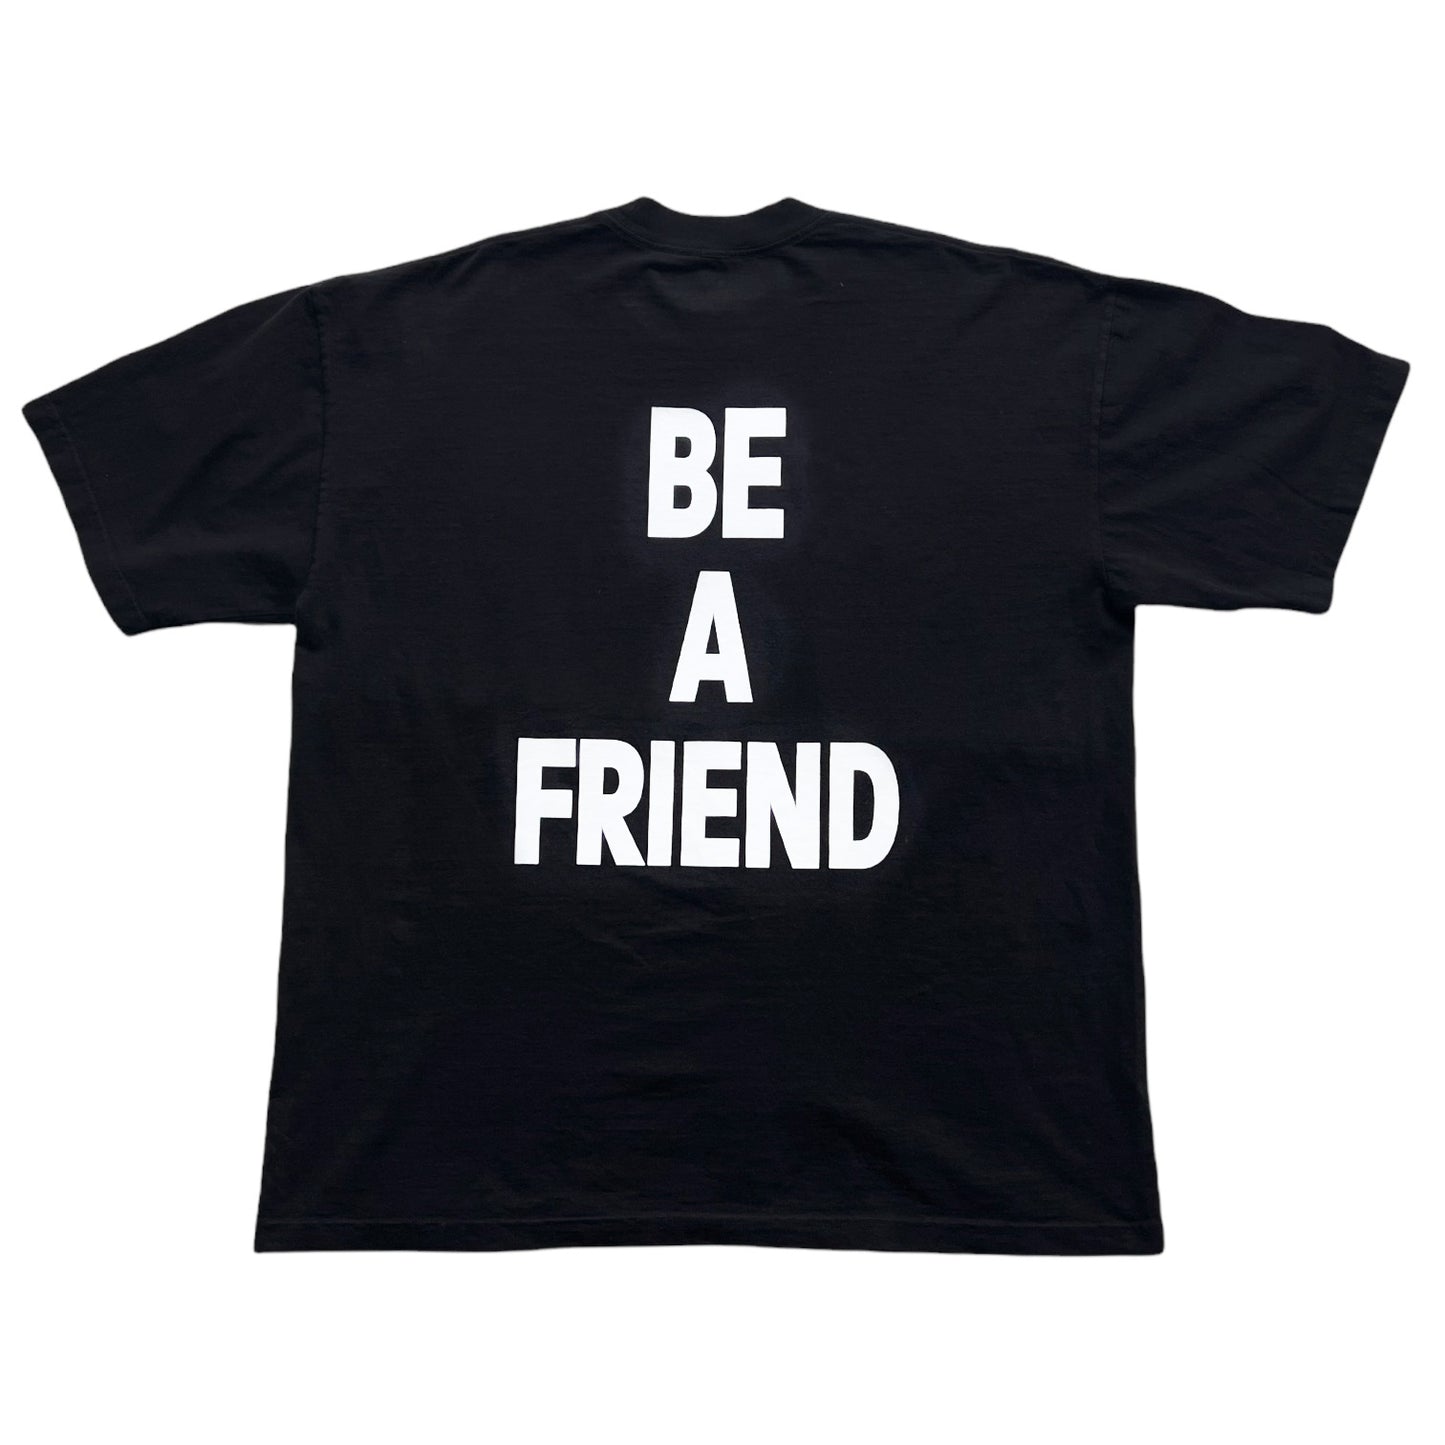 BE A FRIEND - TEE